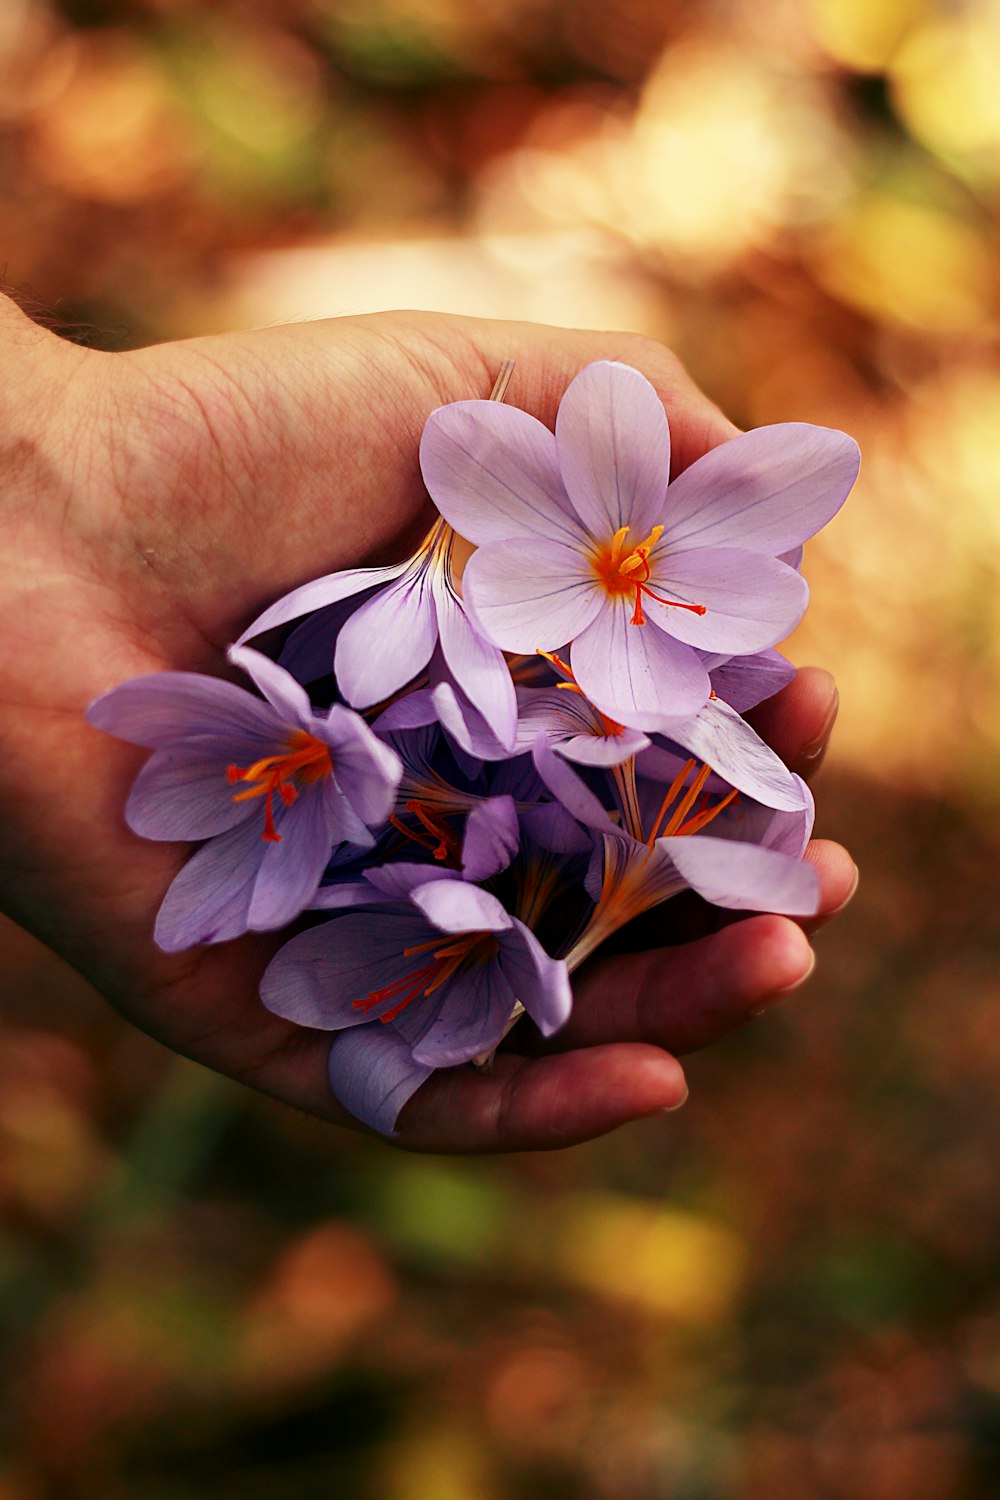 Lila Blütenblätter auf der Hand einer Person